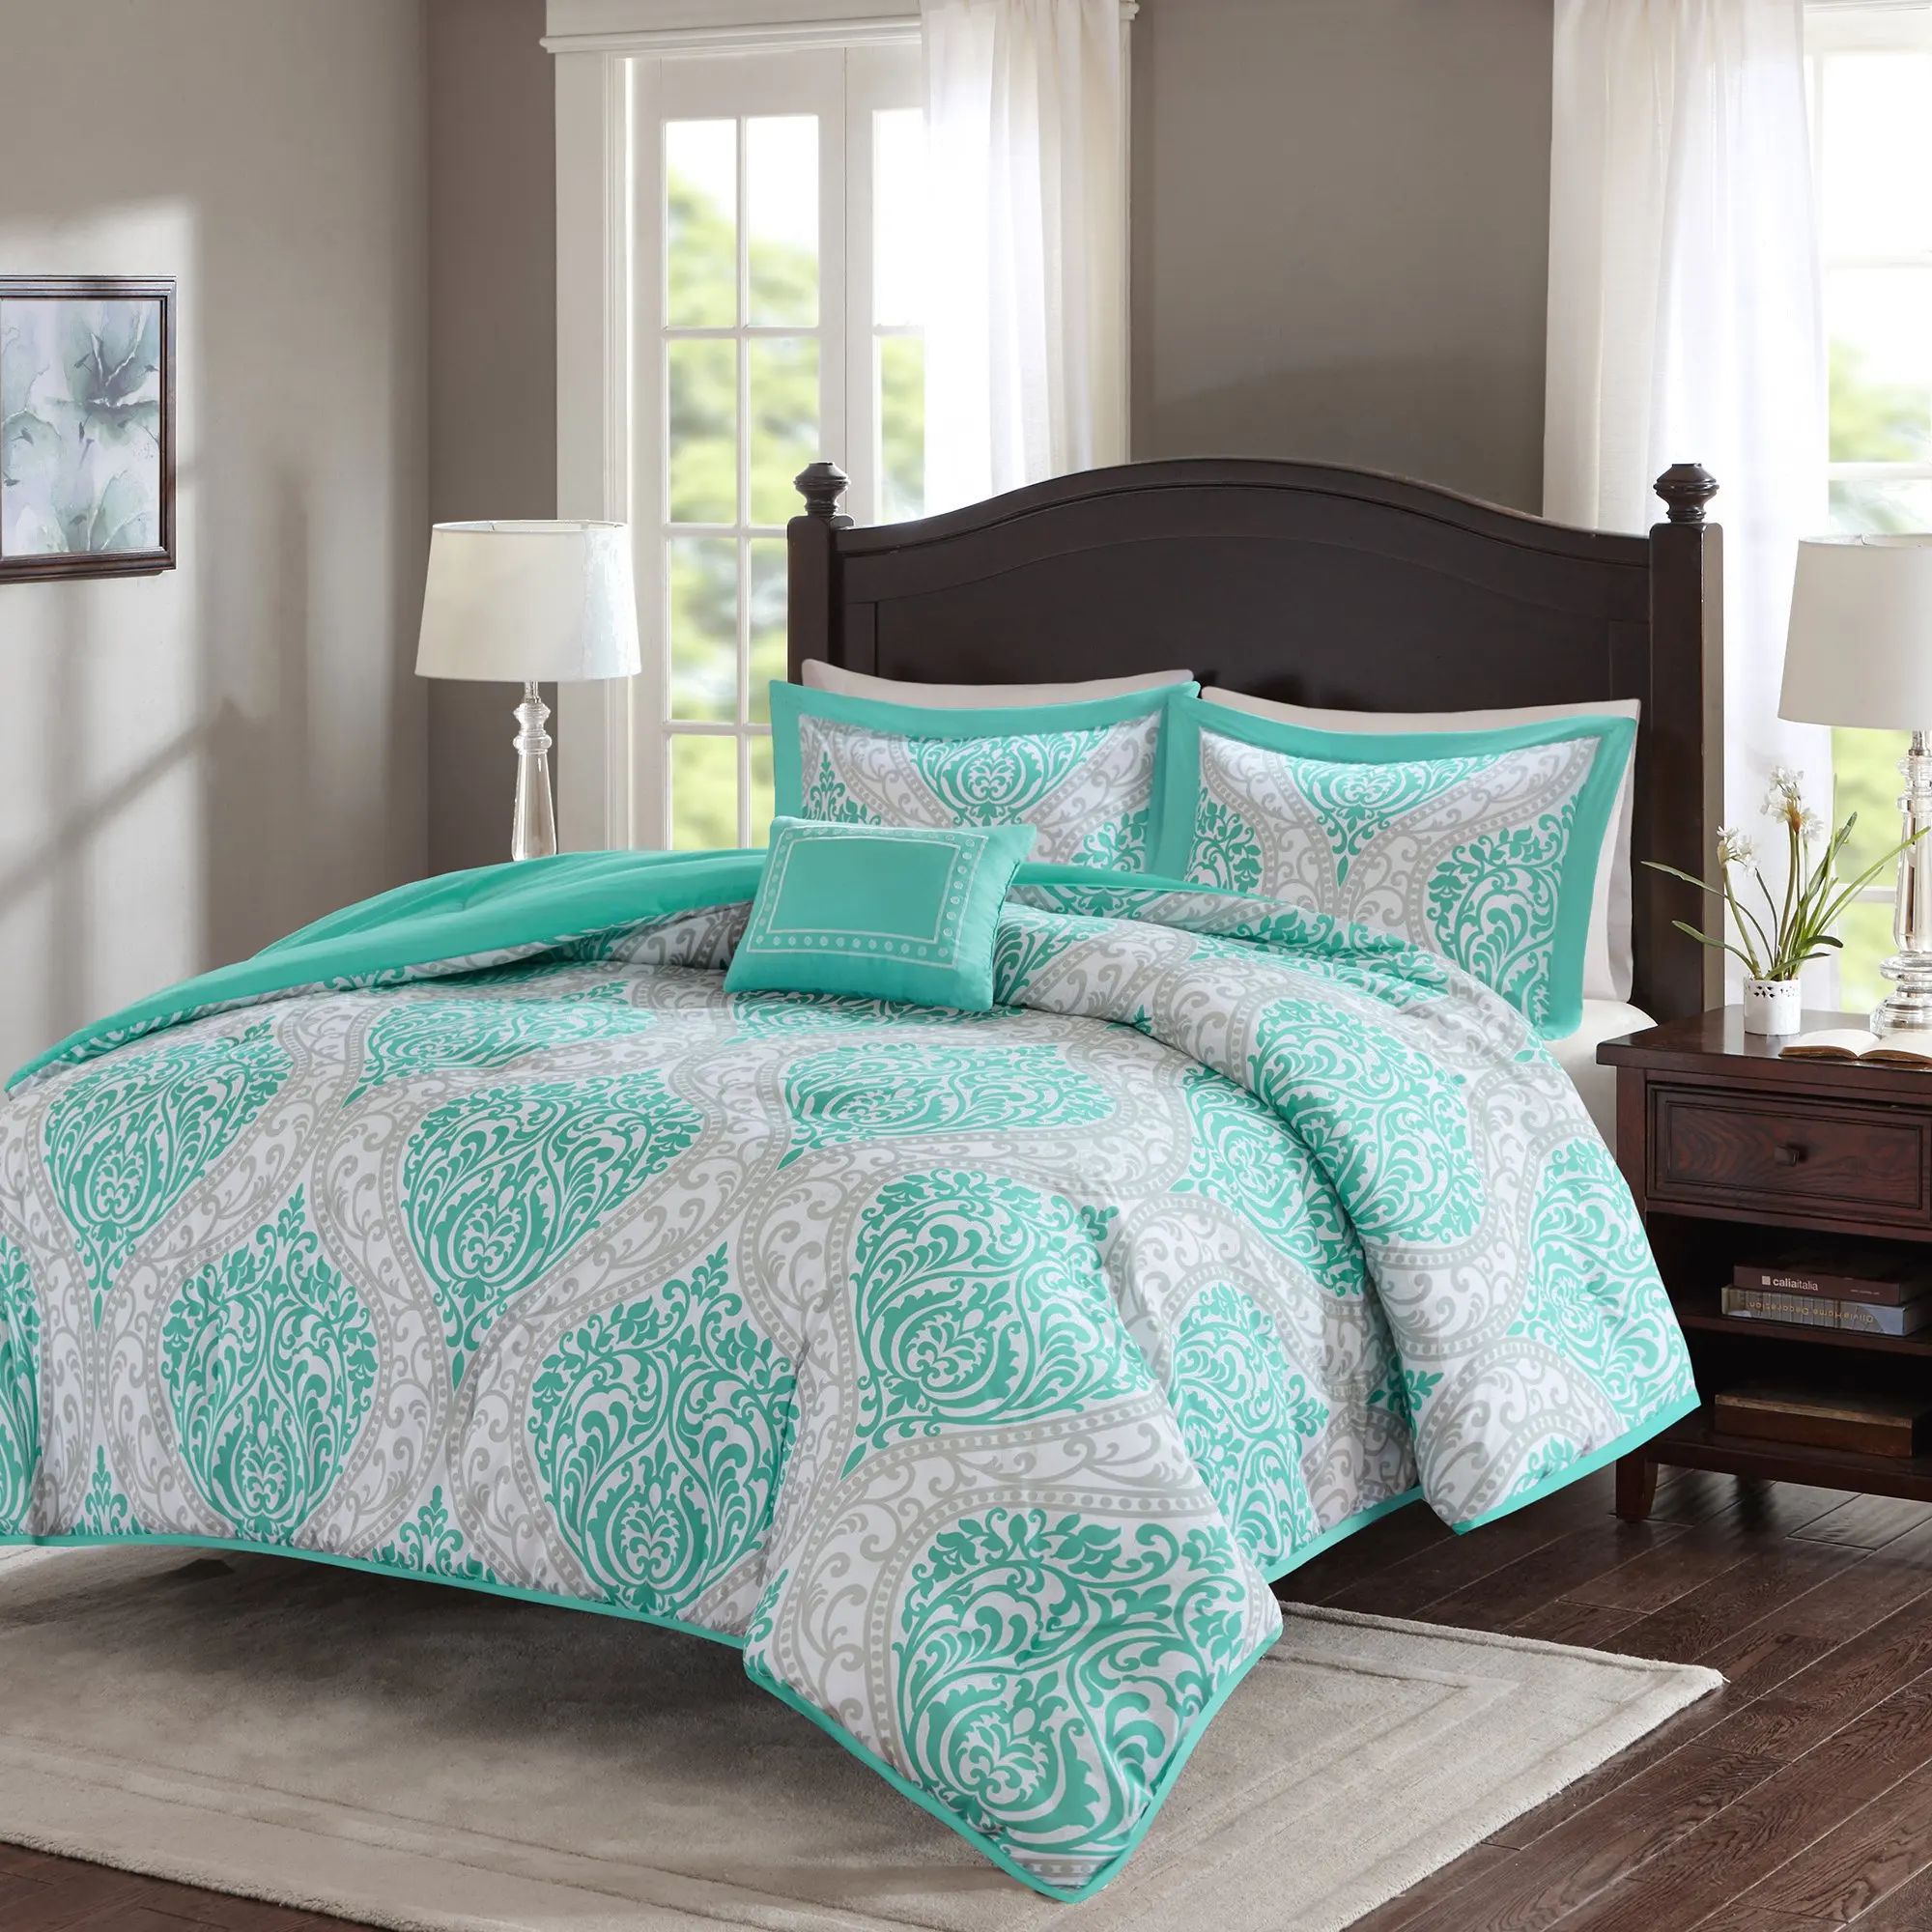 Cheap Twin Xl Comforter Set, find Twin Xl Comforter Set deals on line